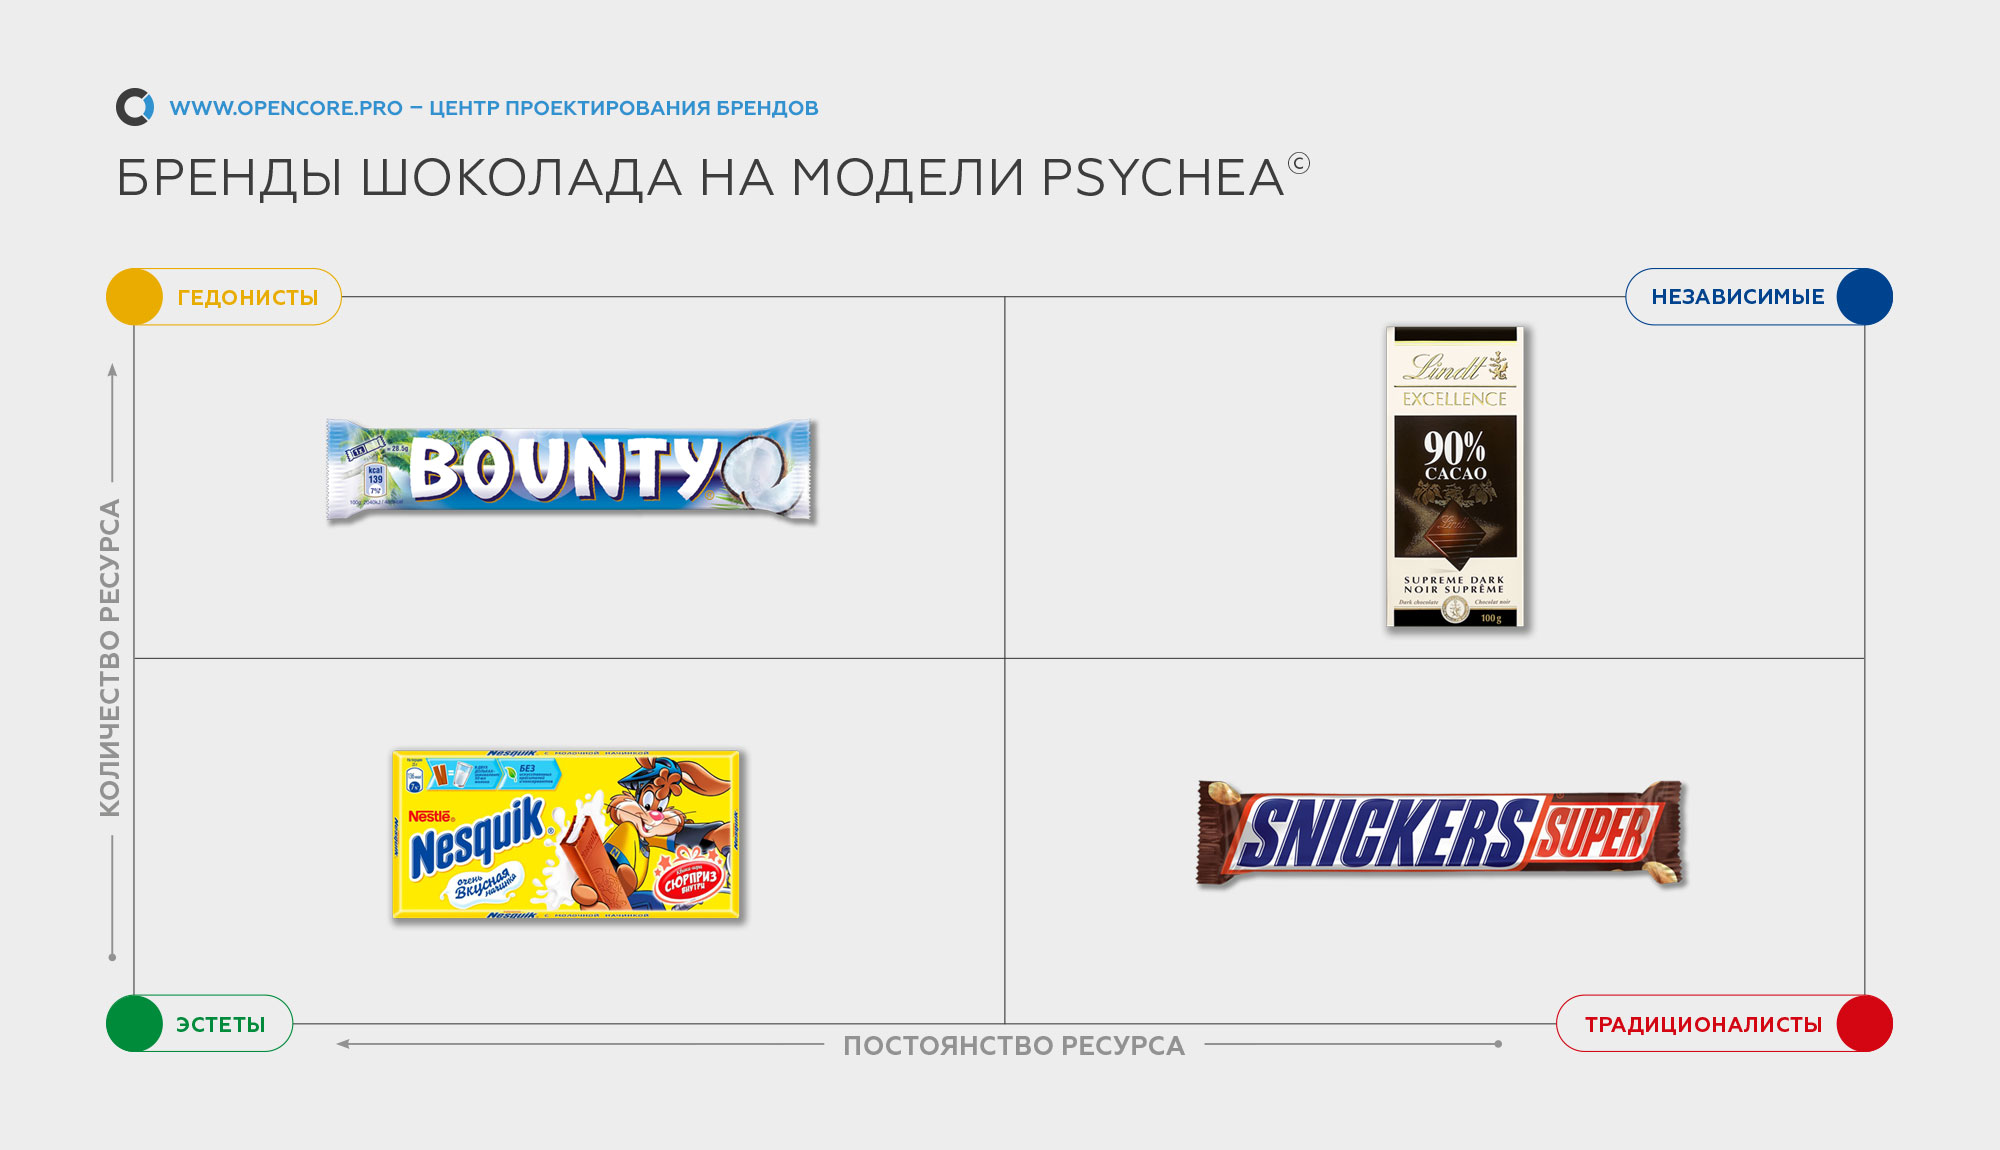 бренды шоколада по модели PSYCHEA